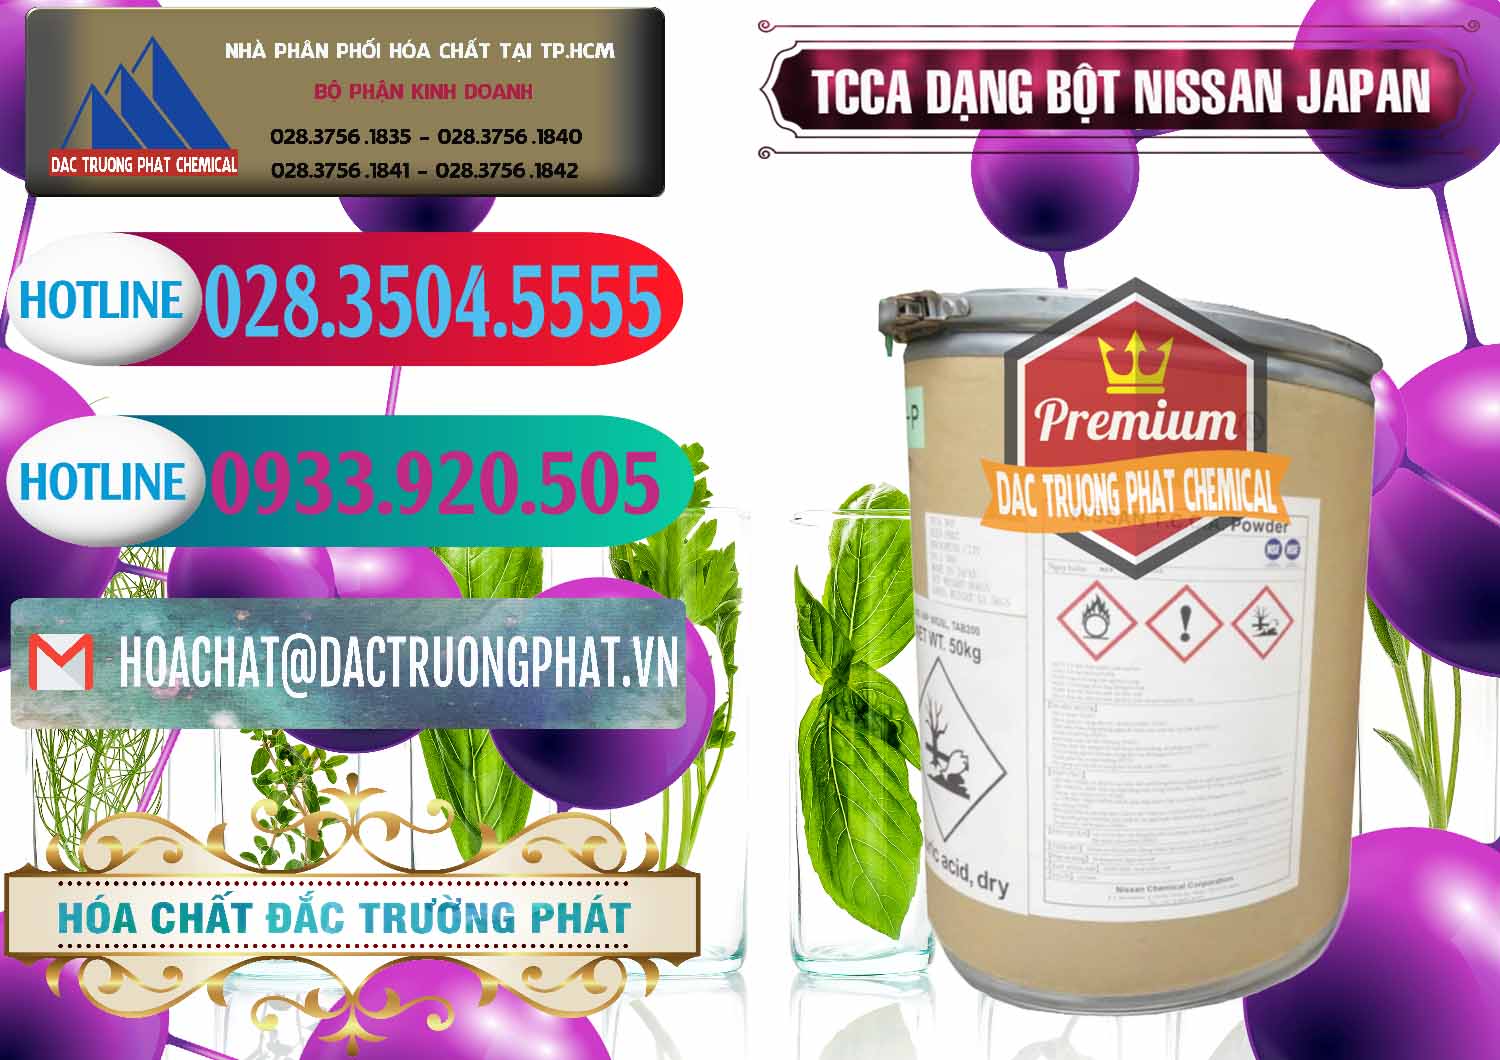 Cty kinh doanh ( bán ) TCCA - Acid Trichloroisocyanuric 90% Dạng Bột Nissan Nhật Bản Japan - 0375 - Công ty phân phối & cung cấp hóa chất tại TP.HCM - truongphat.vn